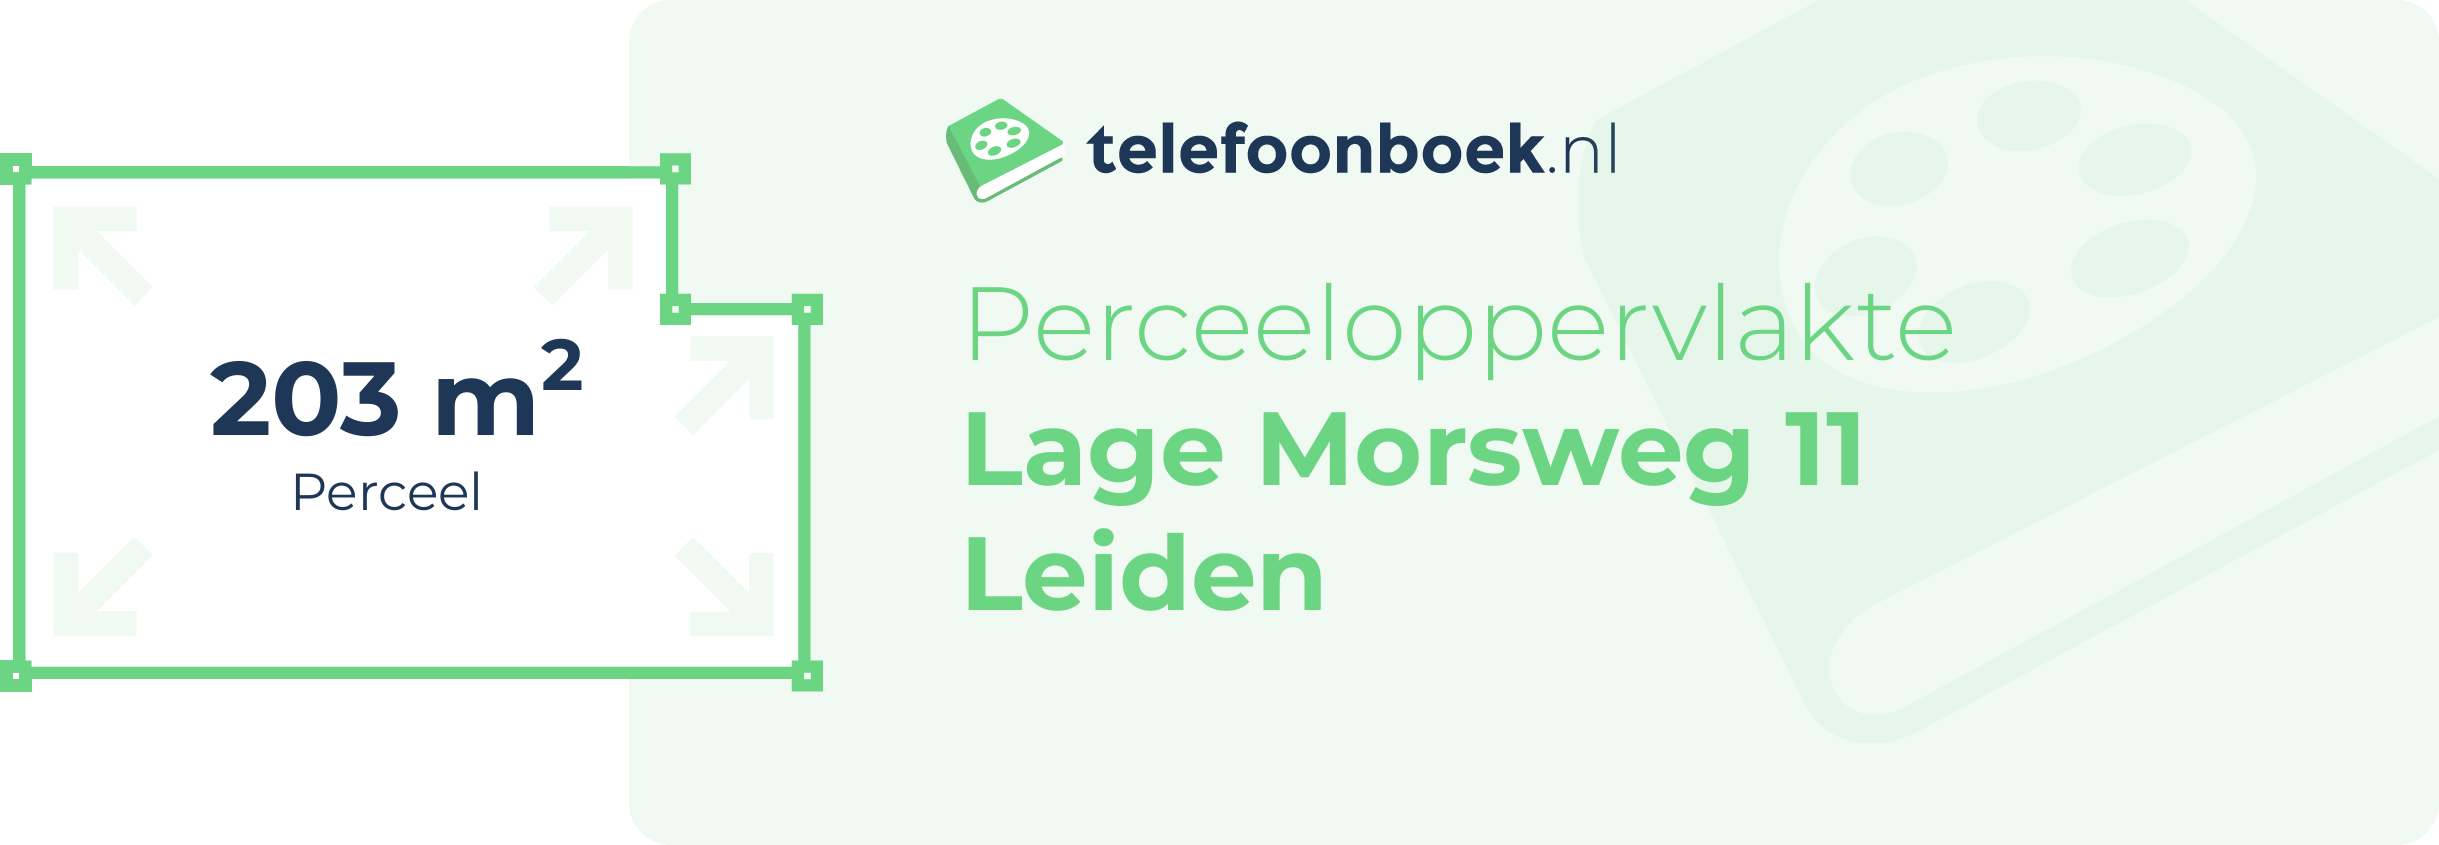 Perceeloppervlakte Lage Morsweg 11 Leiden